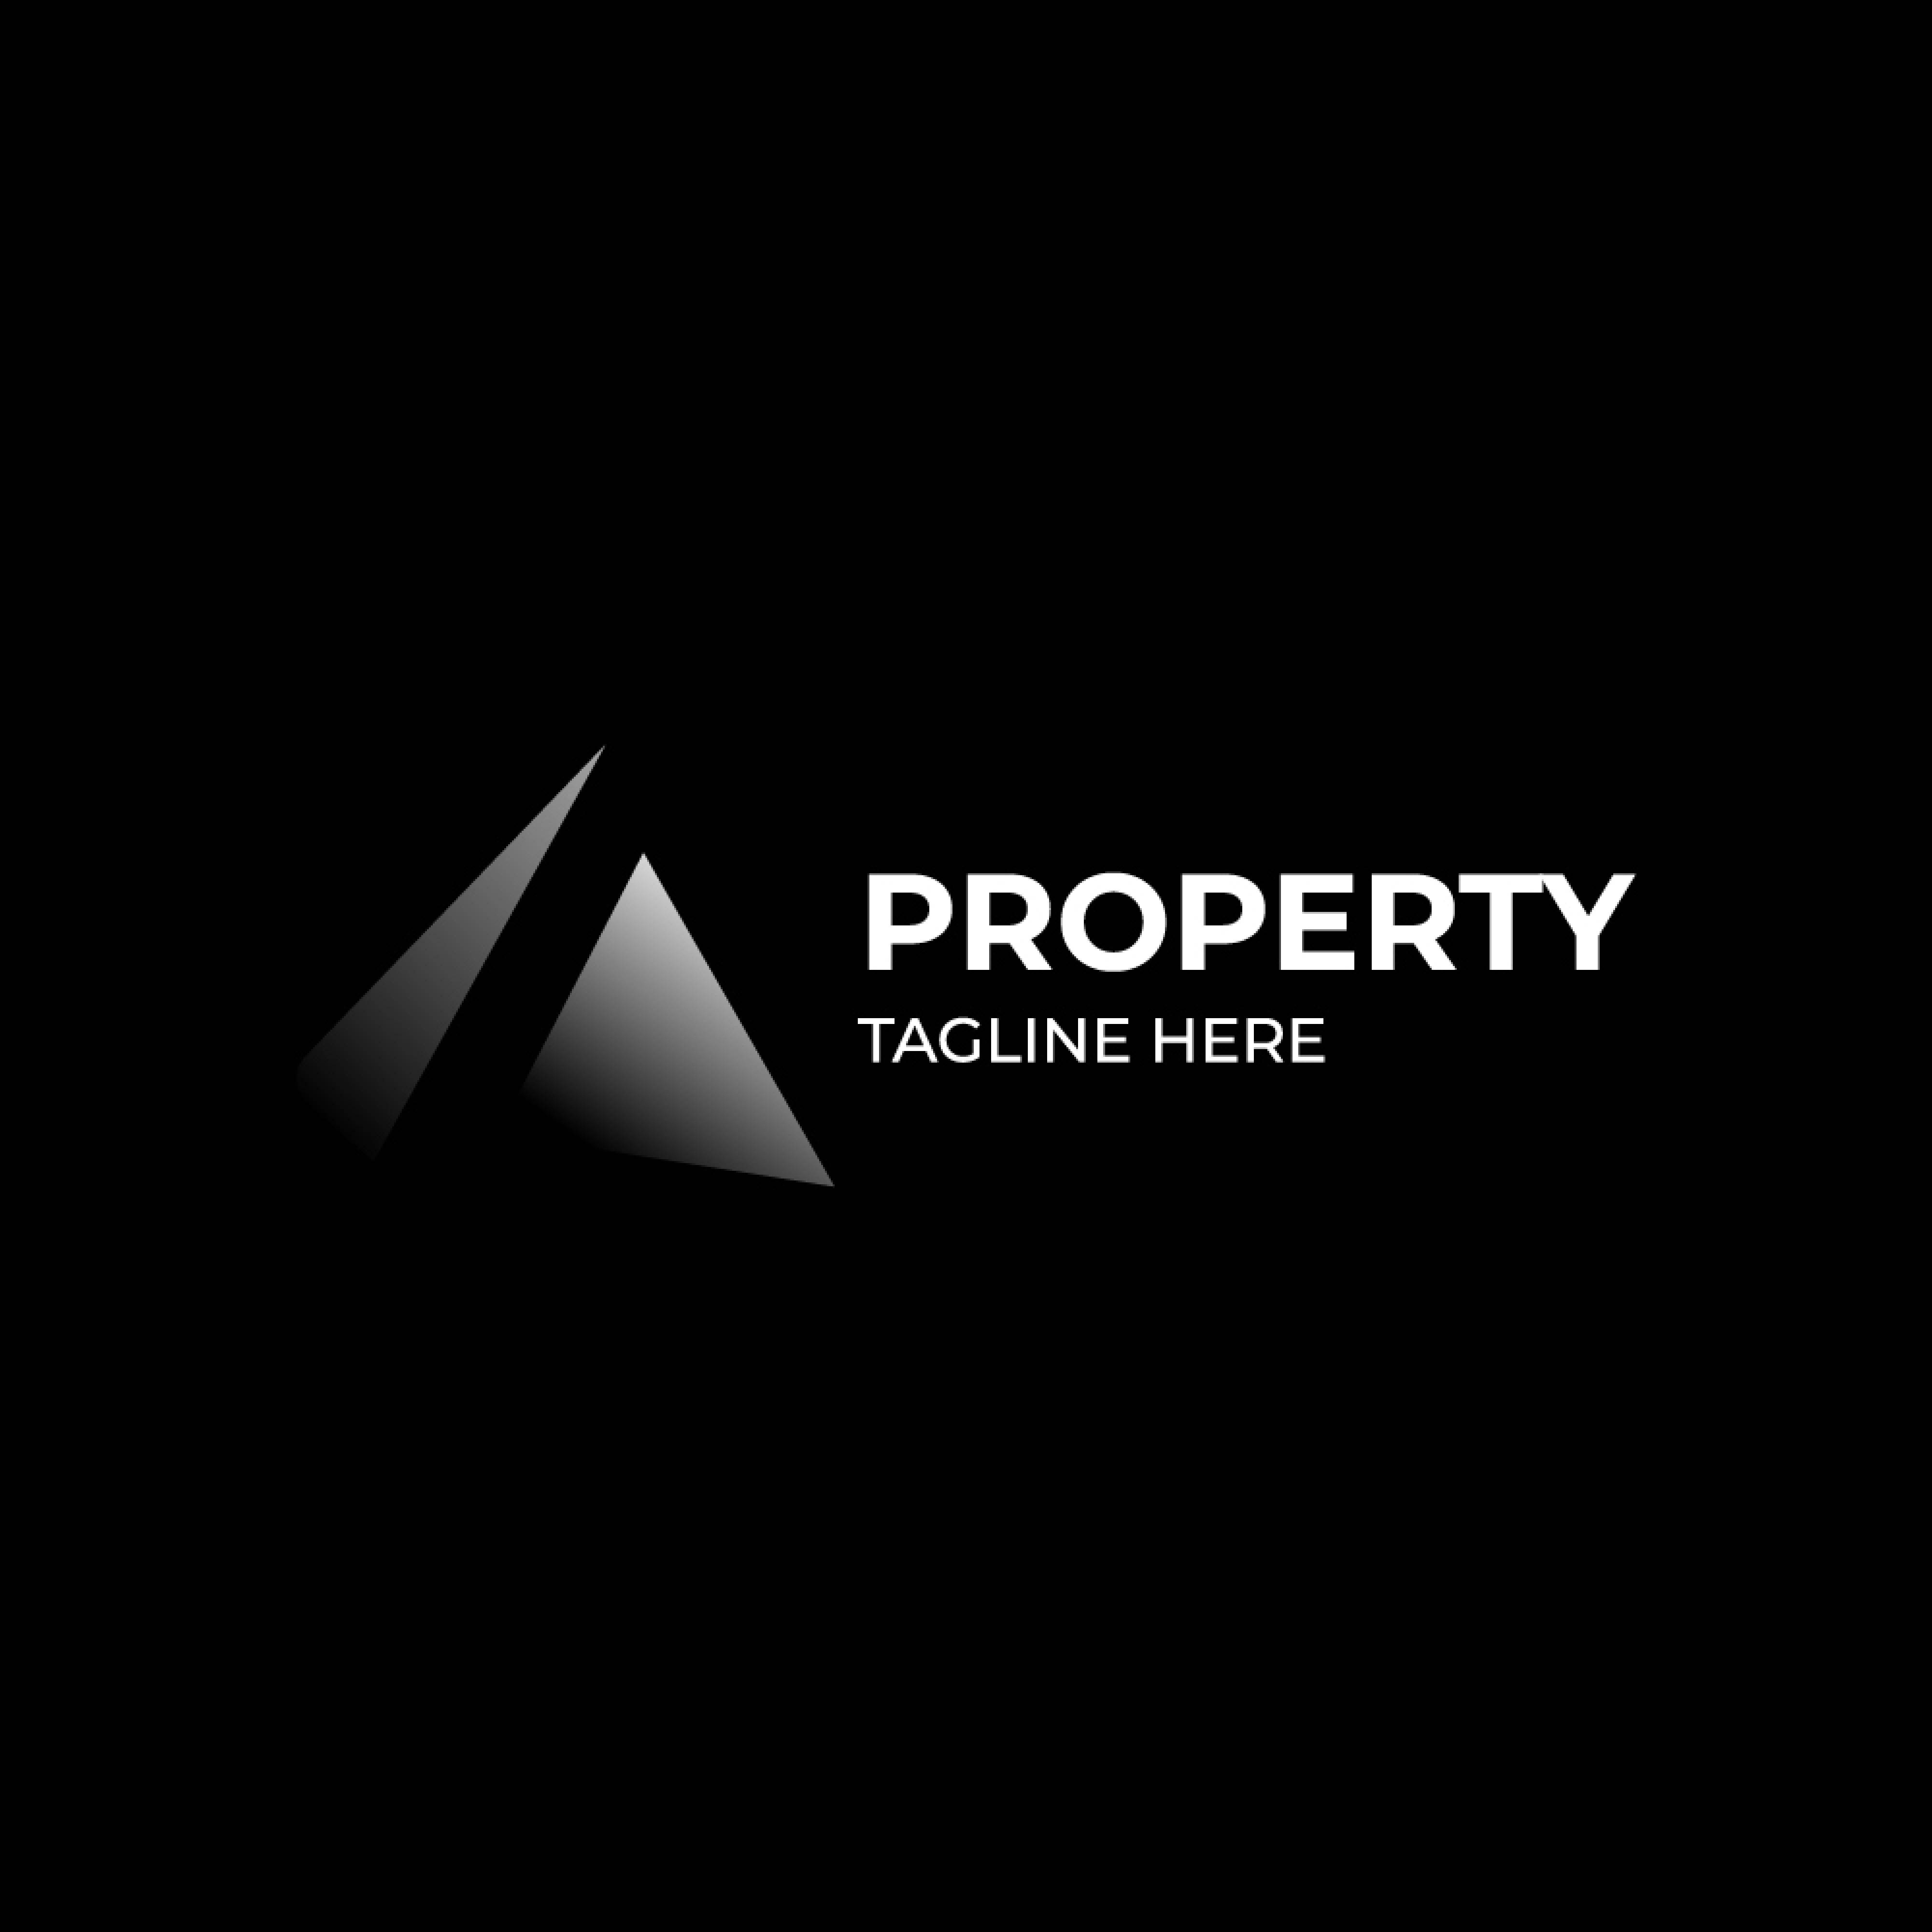 Property architect logo design